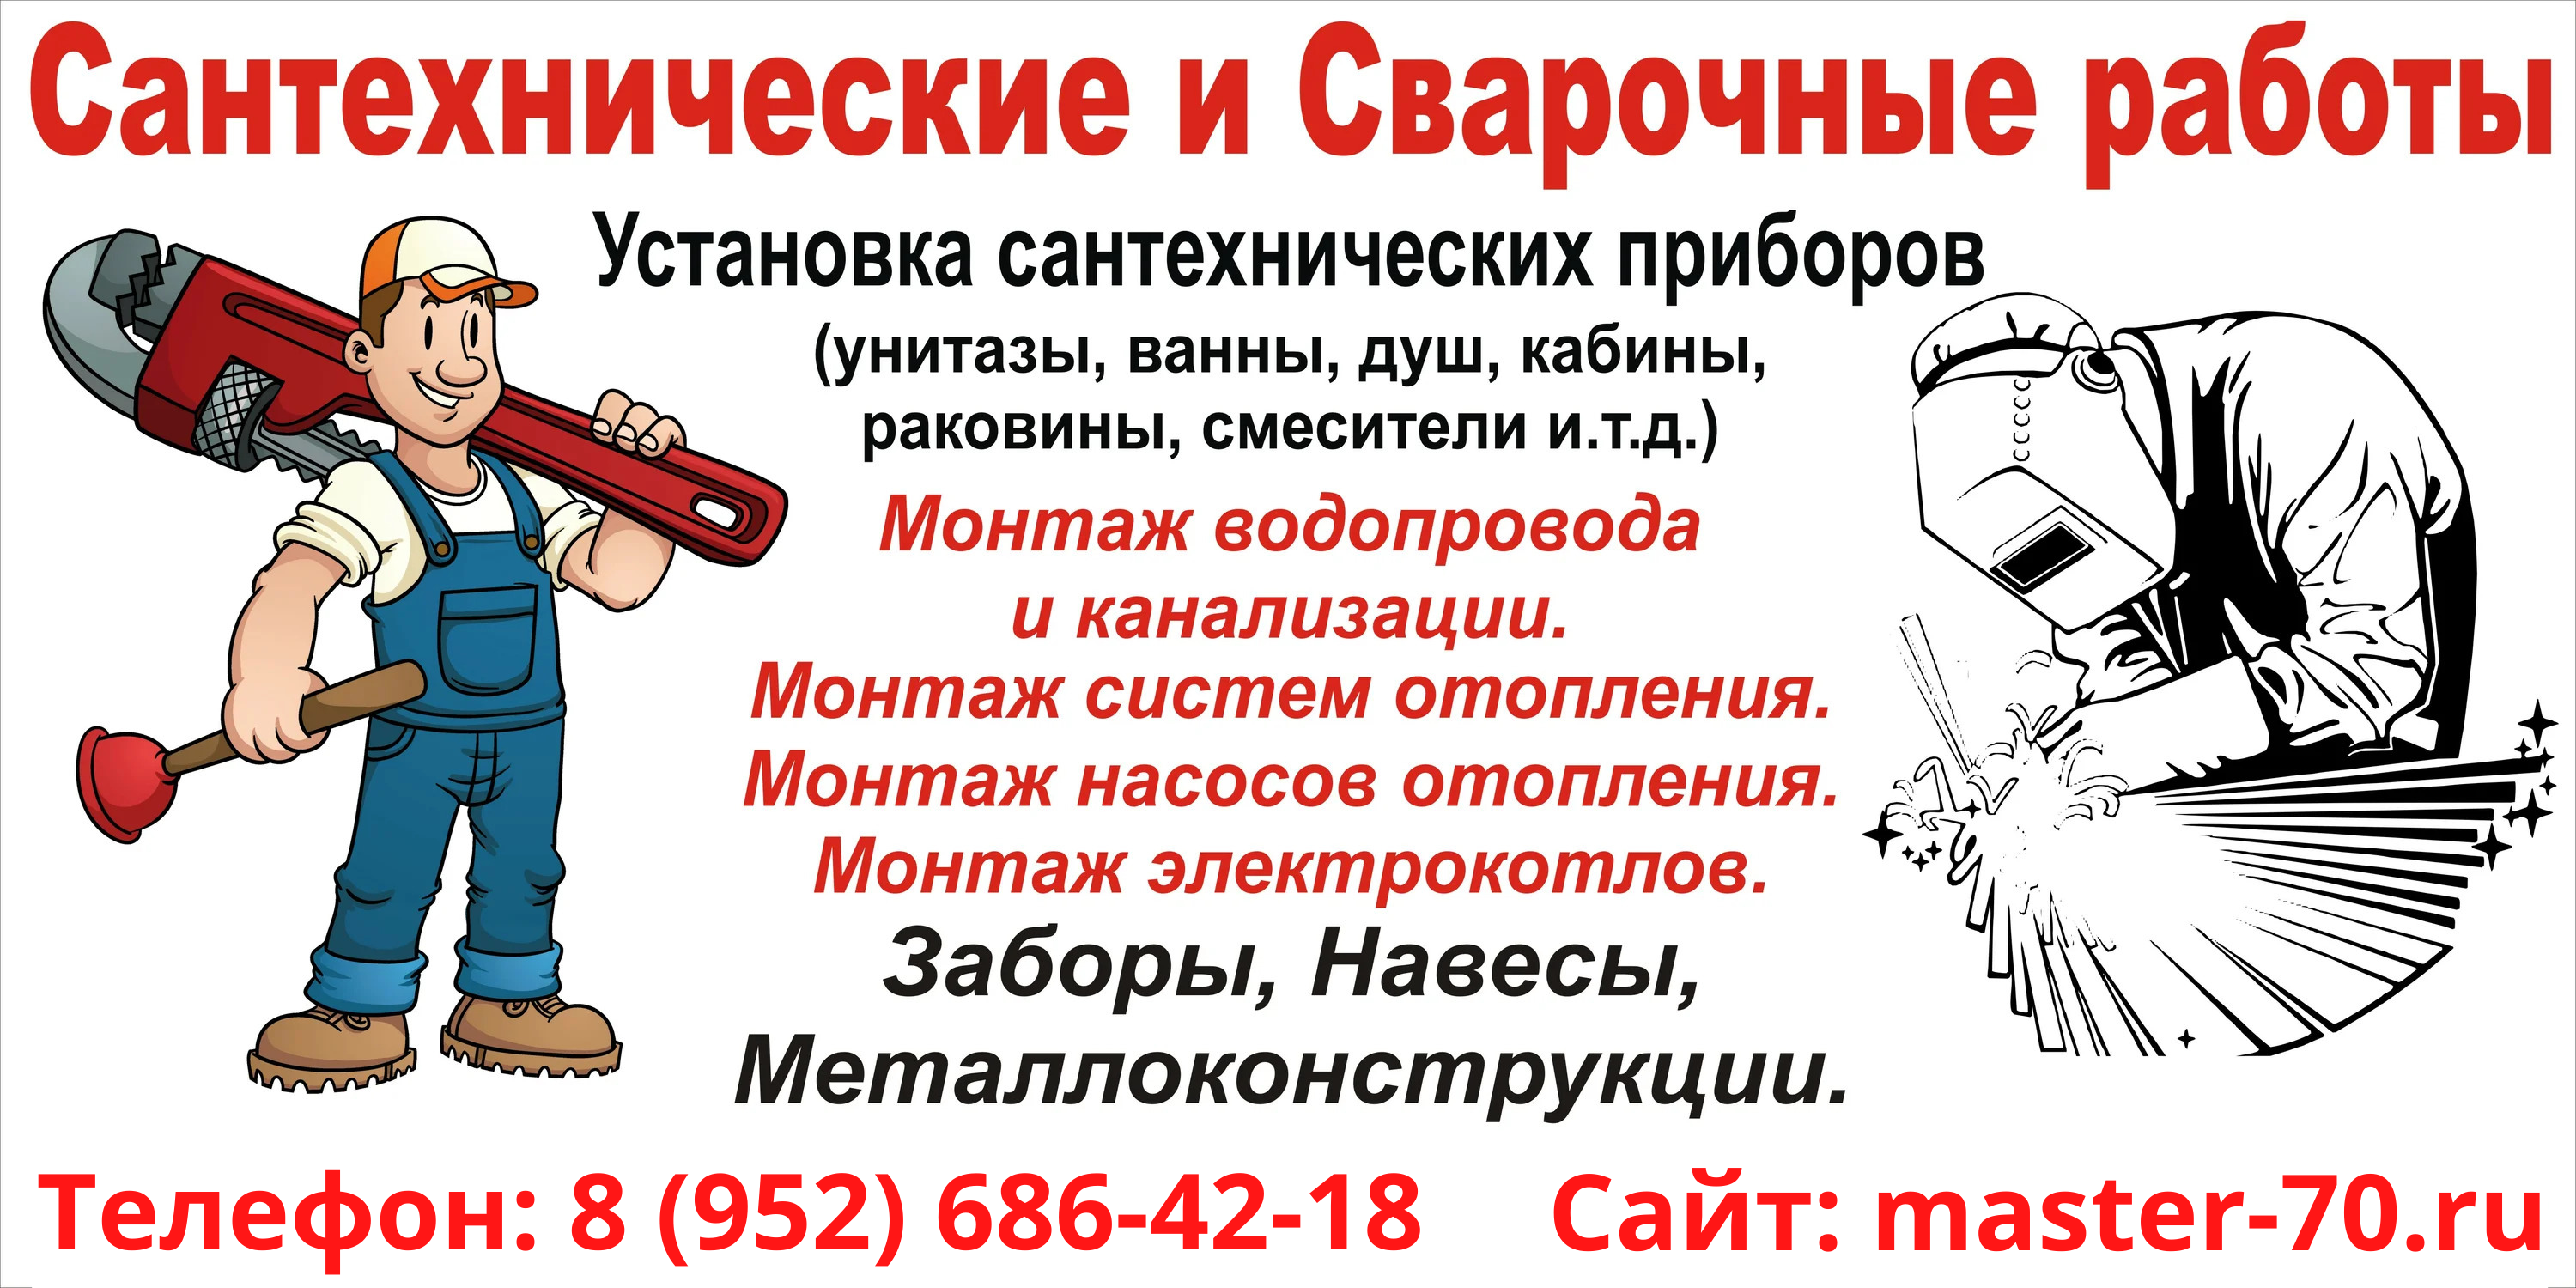 Сварочные работы в Томске Телефон_ 8 (952) 686-42-18.png